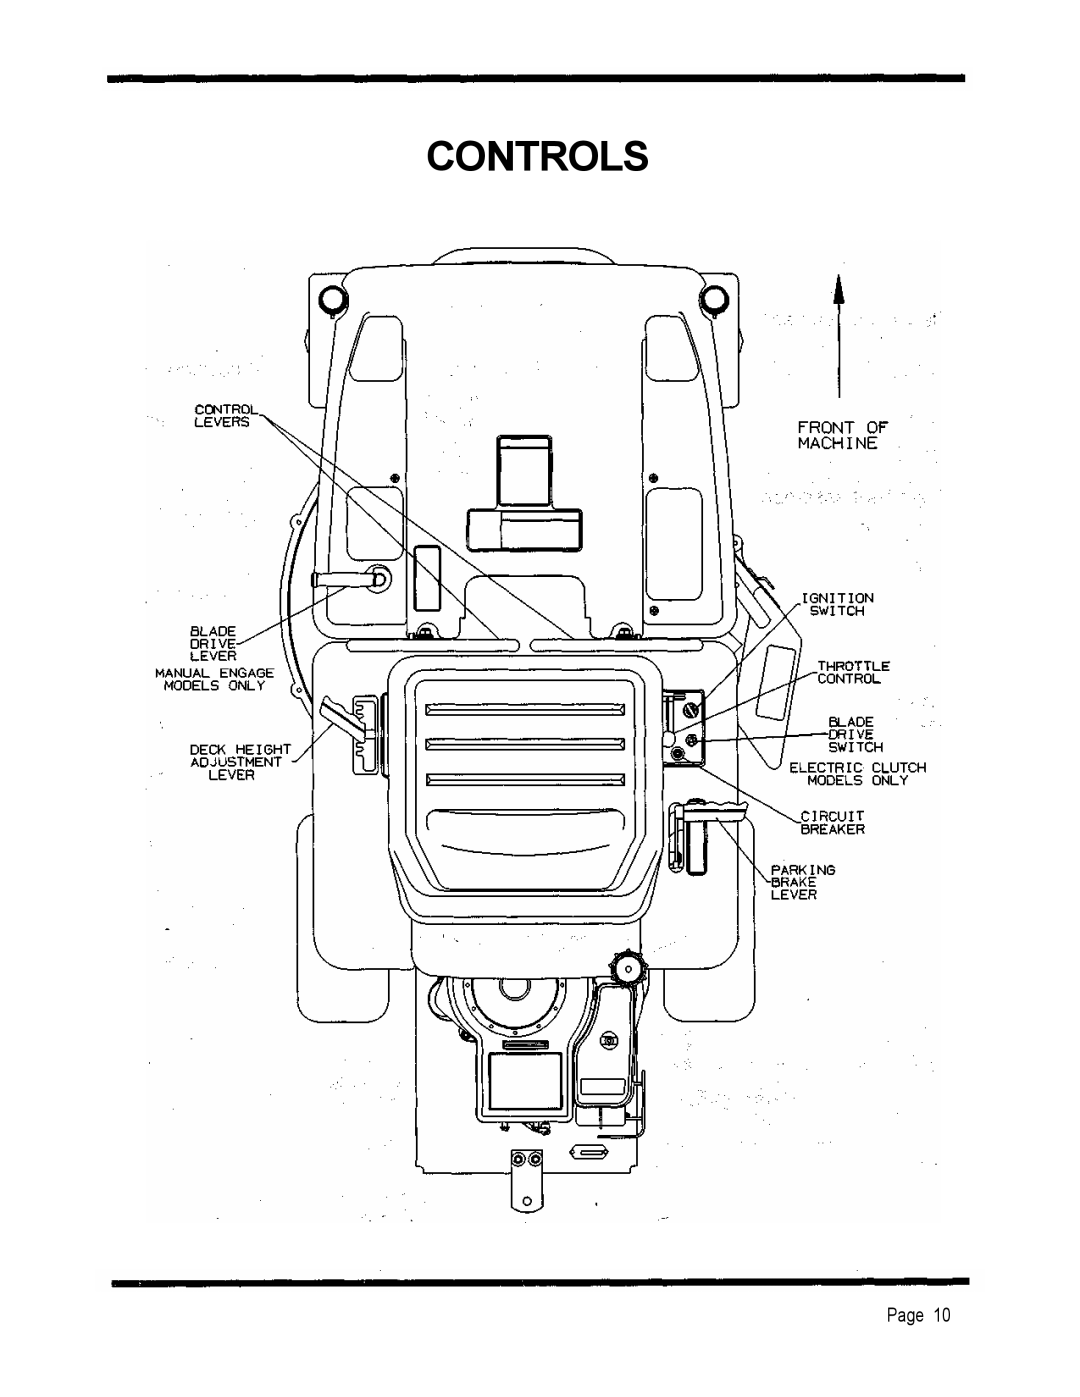 Dixon 2301 manual Controls, Page 